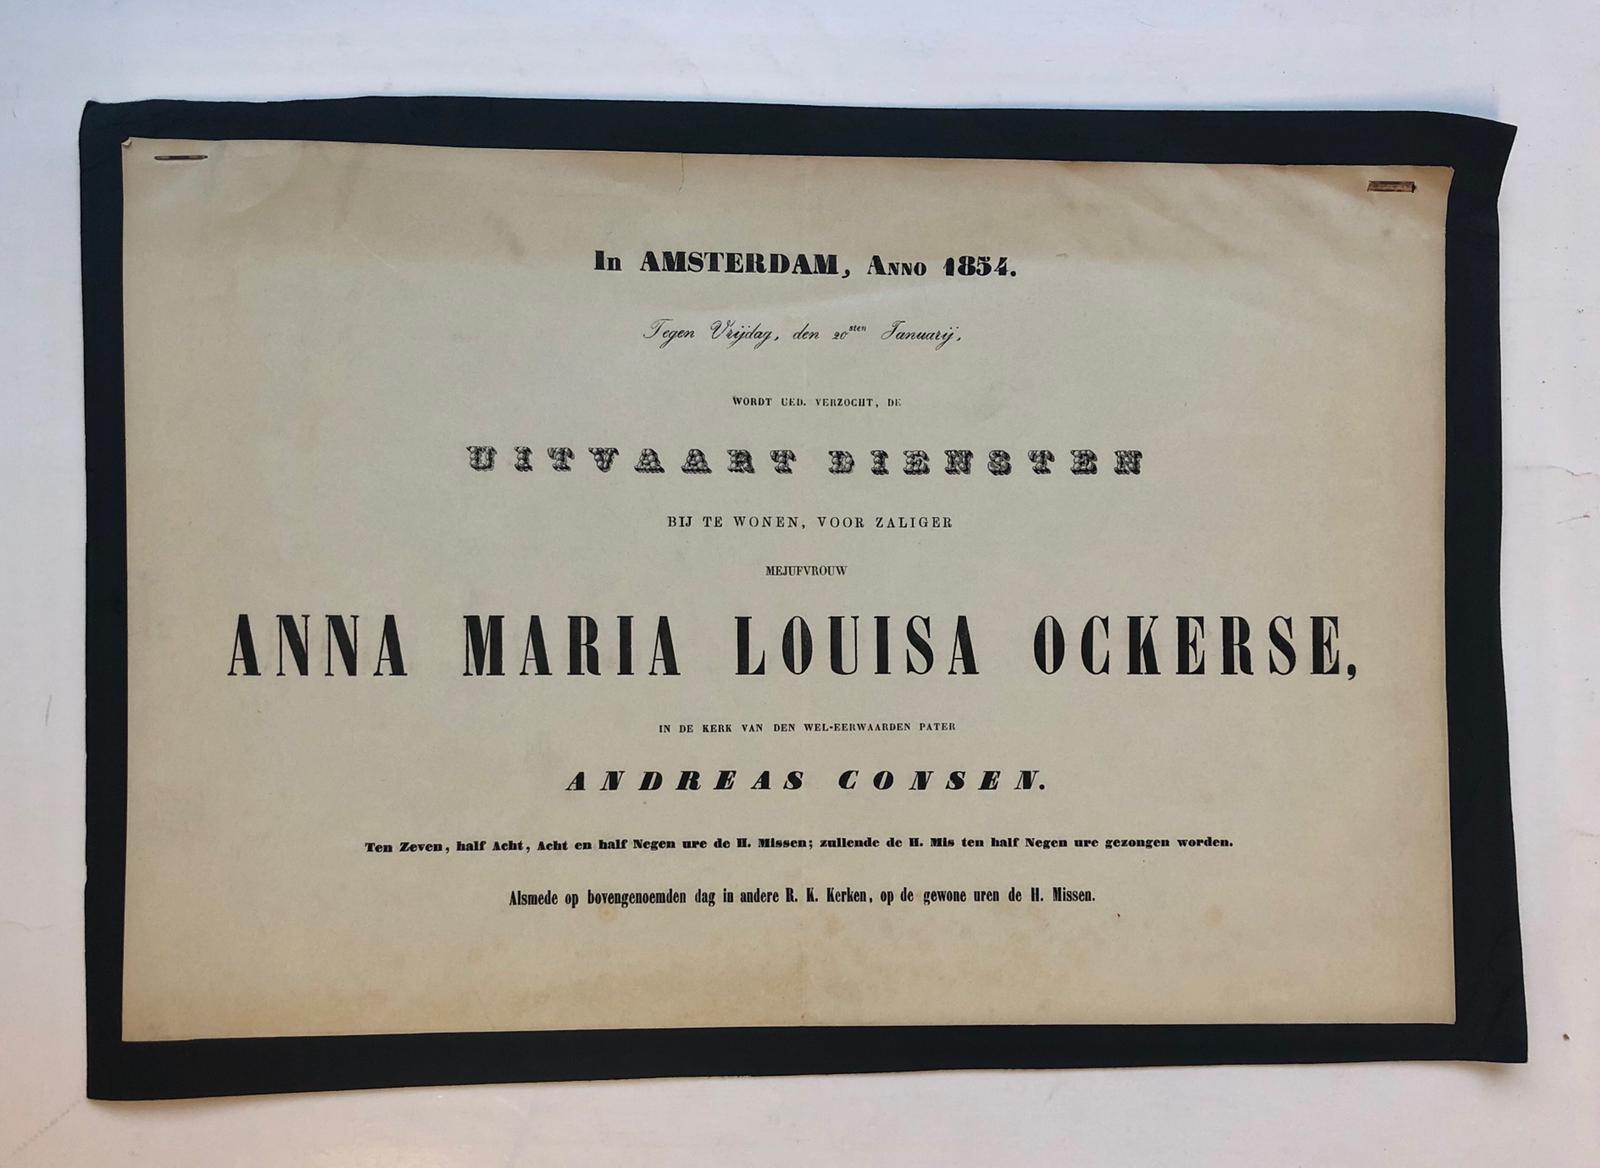  - OCKERSE Uitnodiging voor de uitvaartmis voor Anna Maria Louisa Ockerse. Amsterdam 1854. Plano, gedrukt.